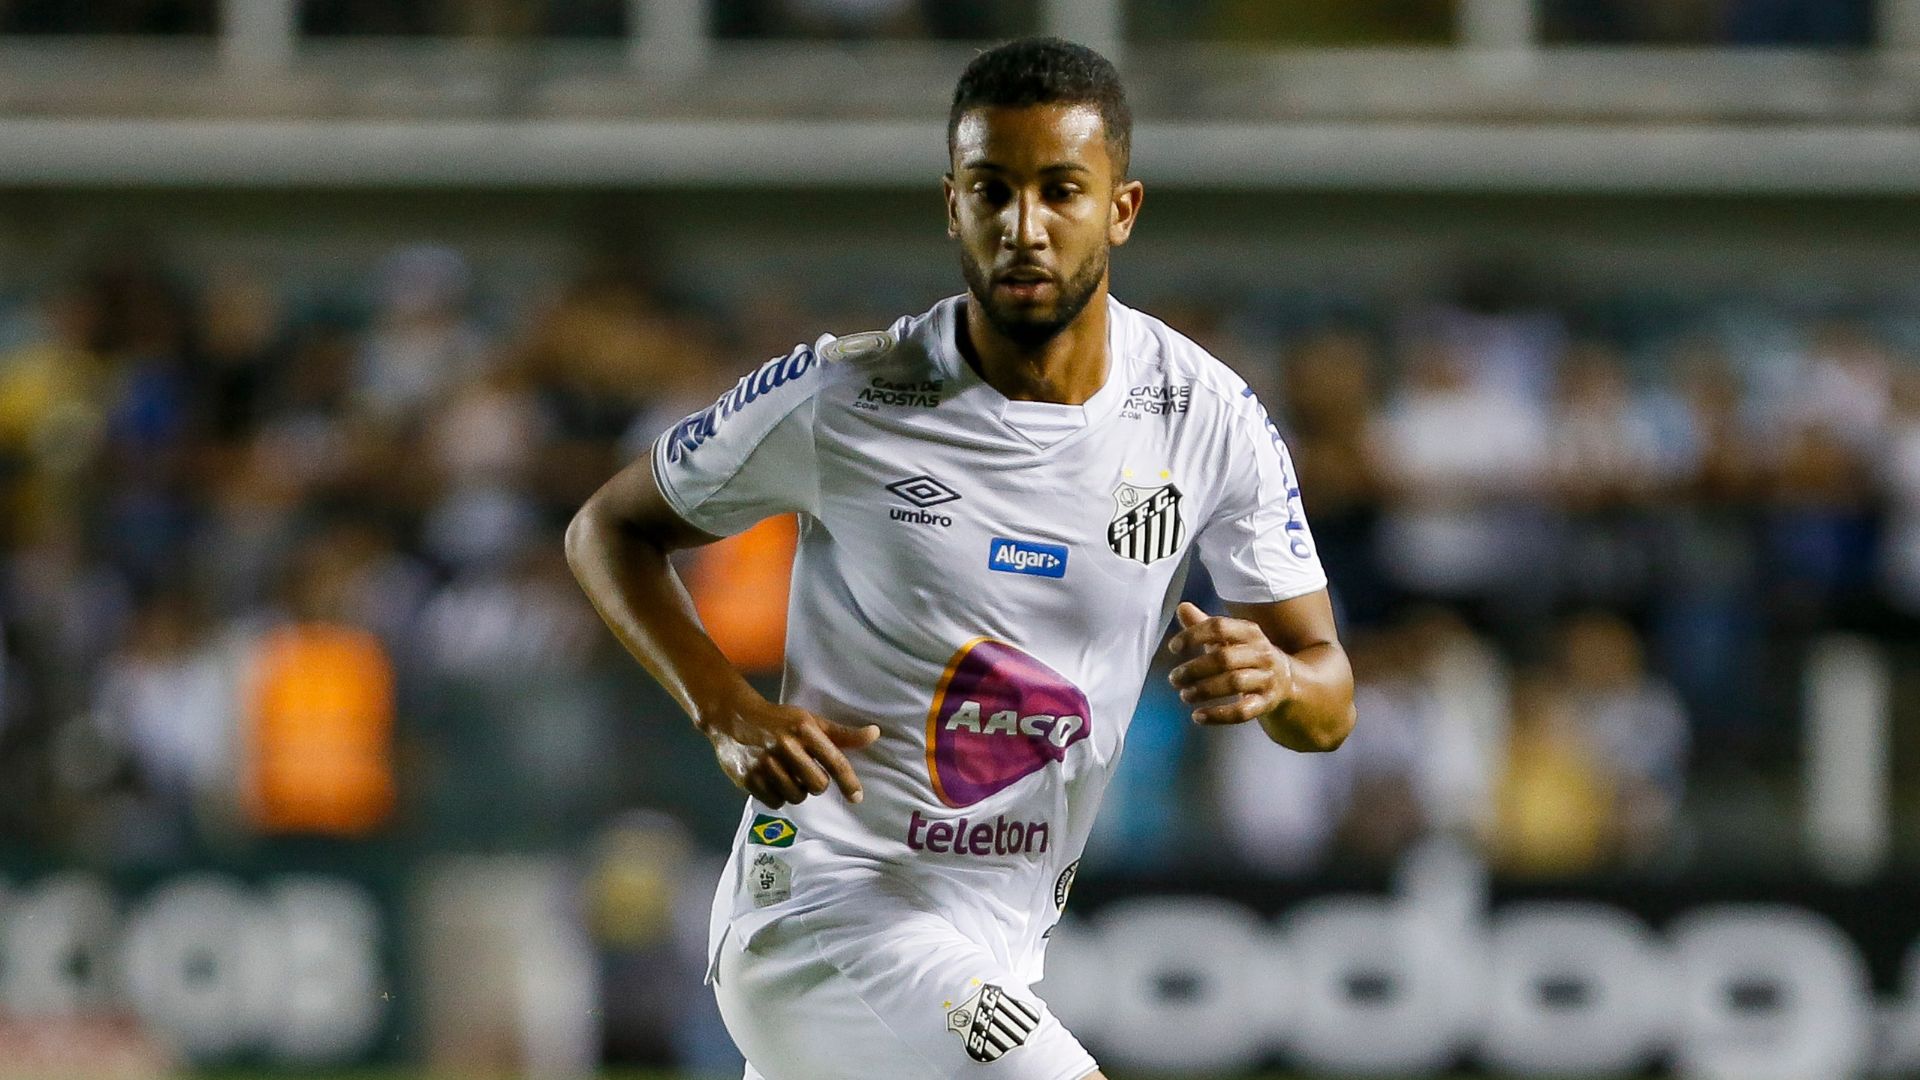 Jorge em sua primeira passagem pelo Santos, em 2019 (Crédito: Getty Images)